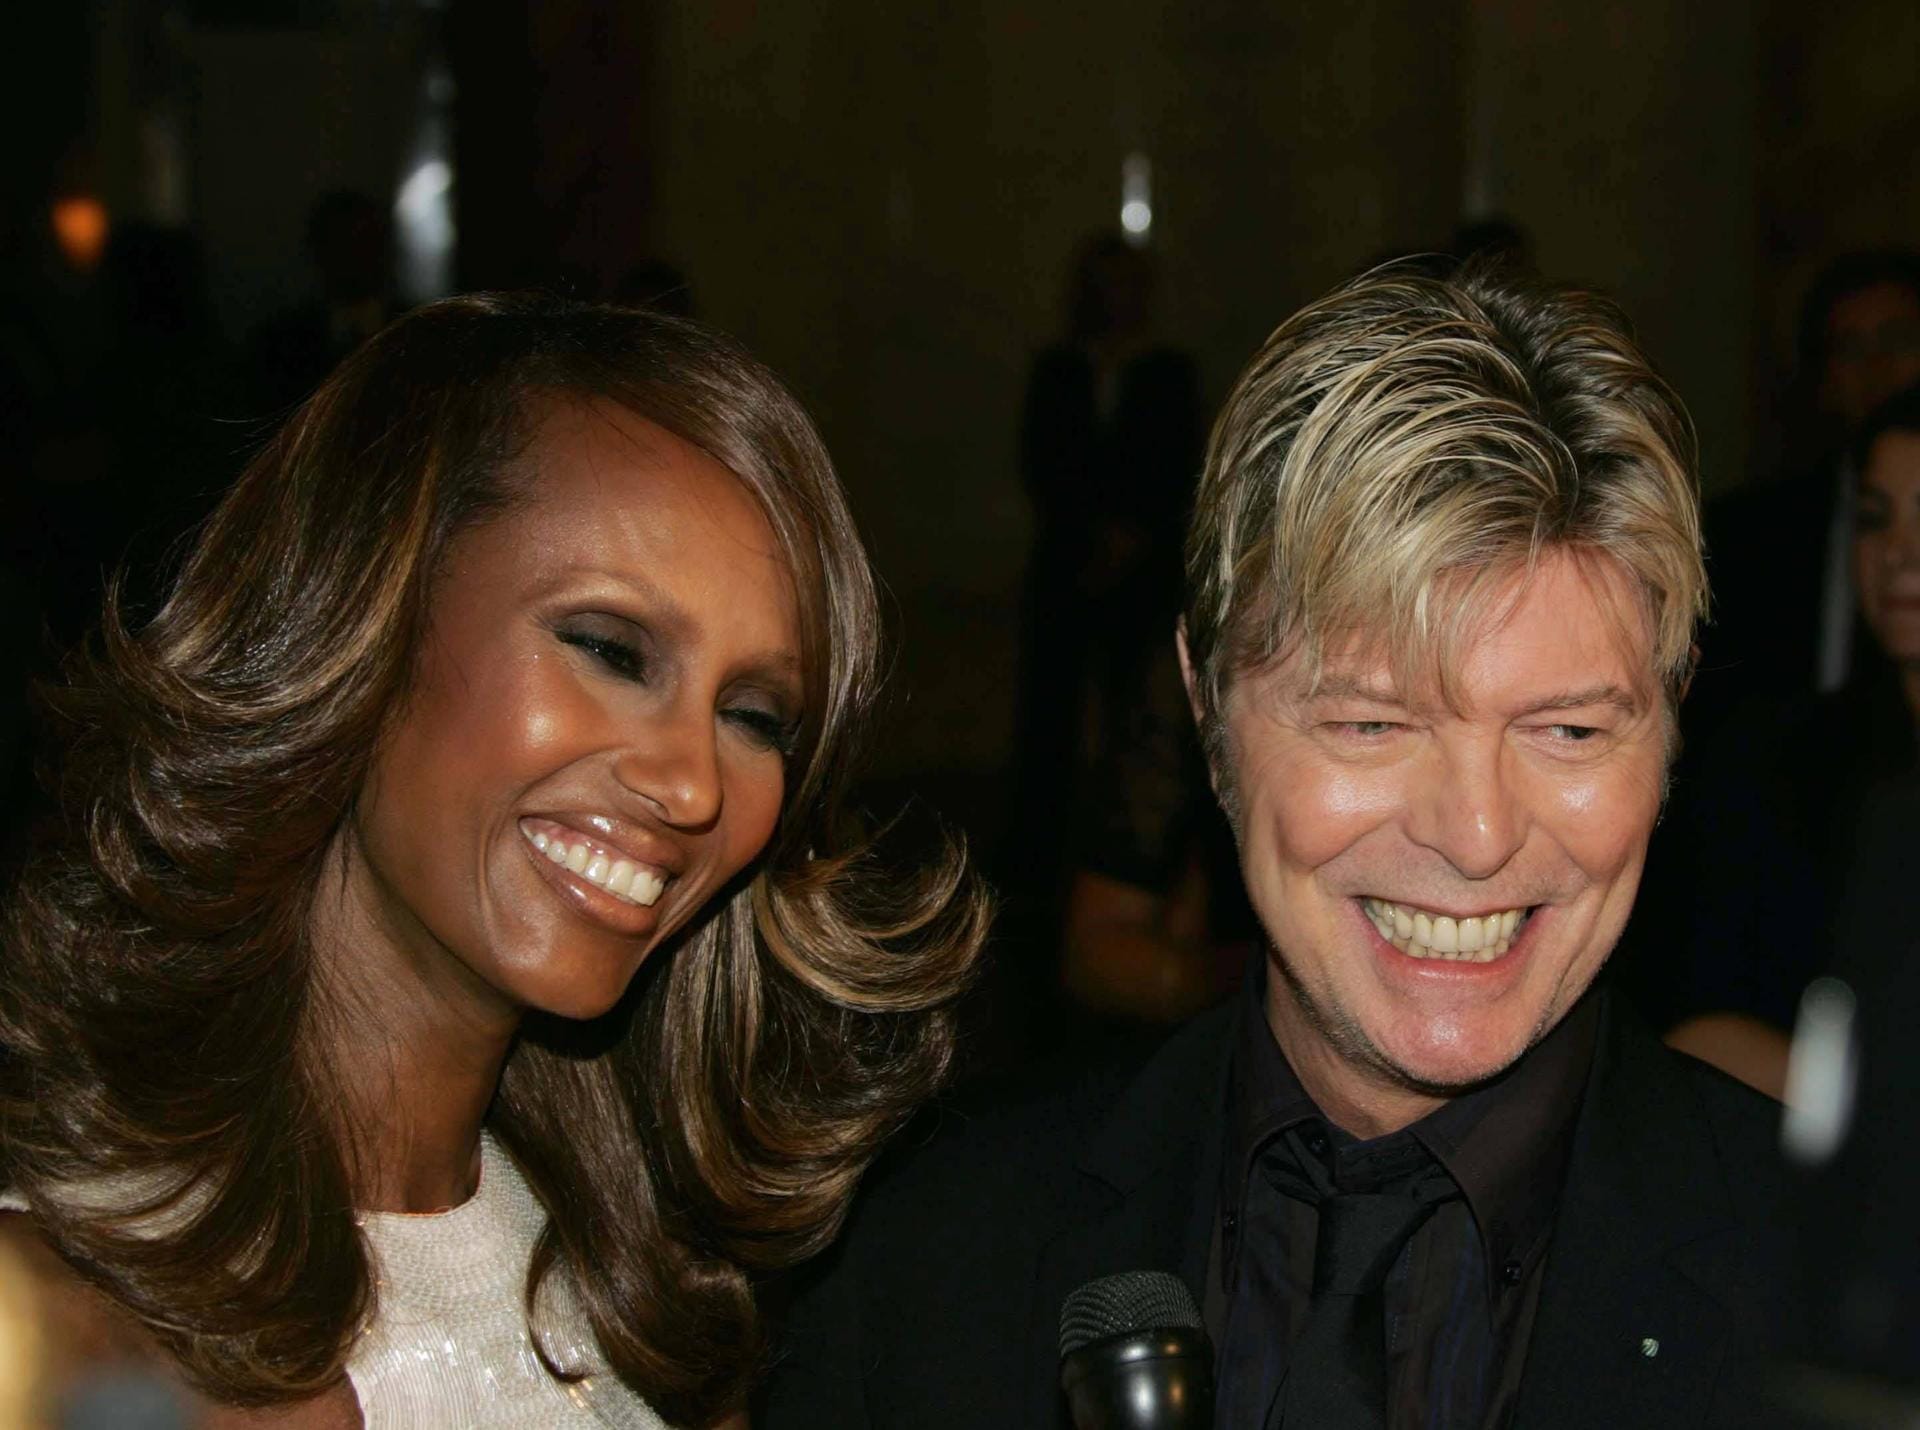 Bowie war seit 1992 in zweiter Ehe mit dem Model Iman Abdulmajid verheiratet. Mit ihr hat er eine im Jahr 2000 geborene Tochter, Alexandria Zarah. Aus Bowies erster Ehe mit Angela Barnett stammt der 1971 geborene Sohn Duncan Zowie Haywood Jones.